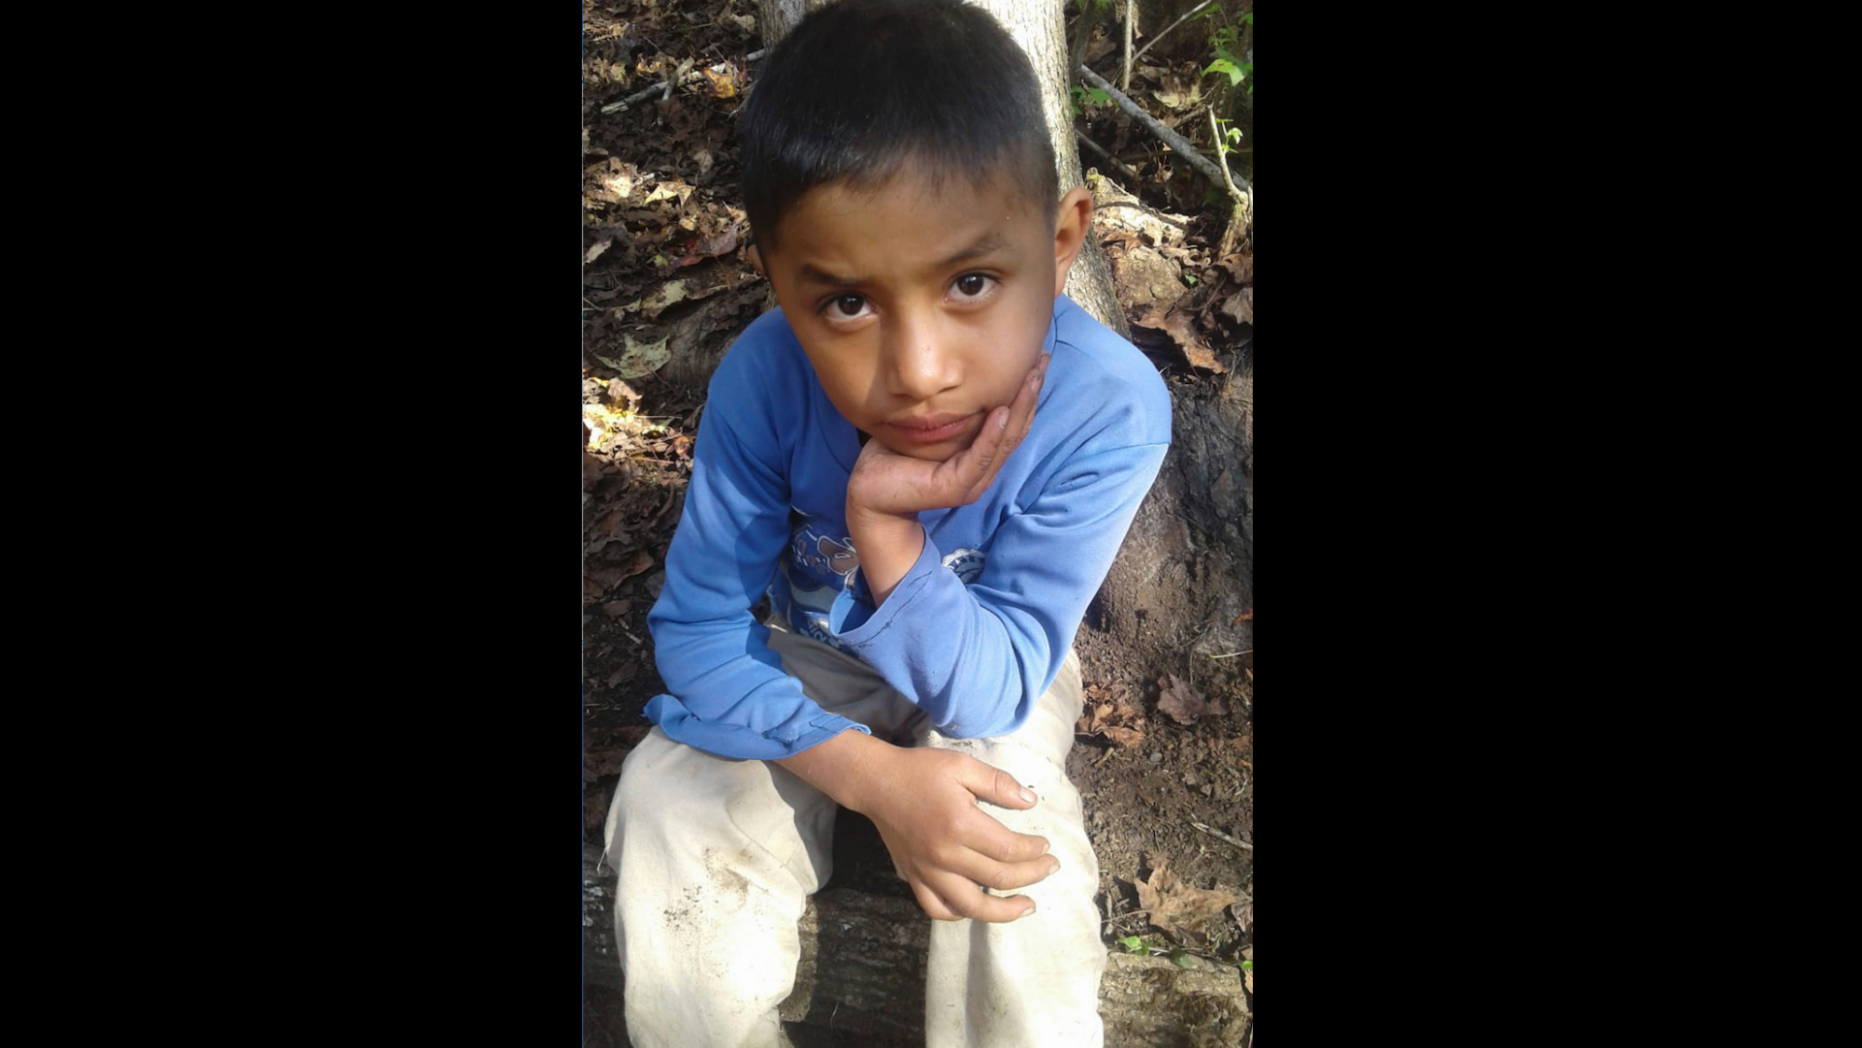 Felipe Gomez Alonso de 8 anos morreu sob custódia do governo